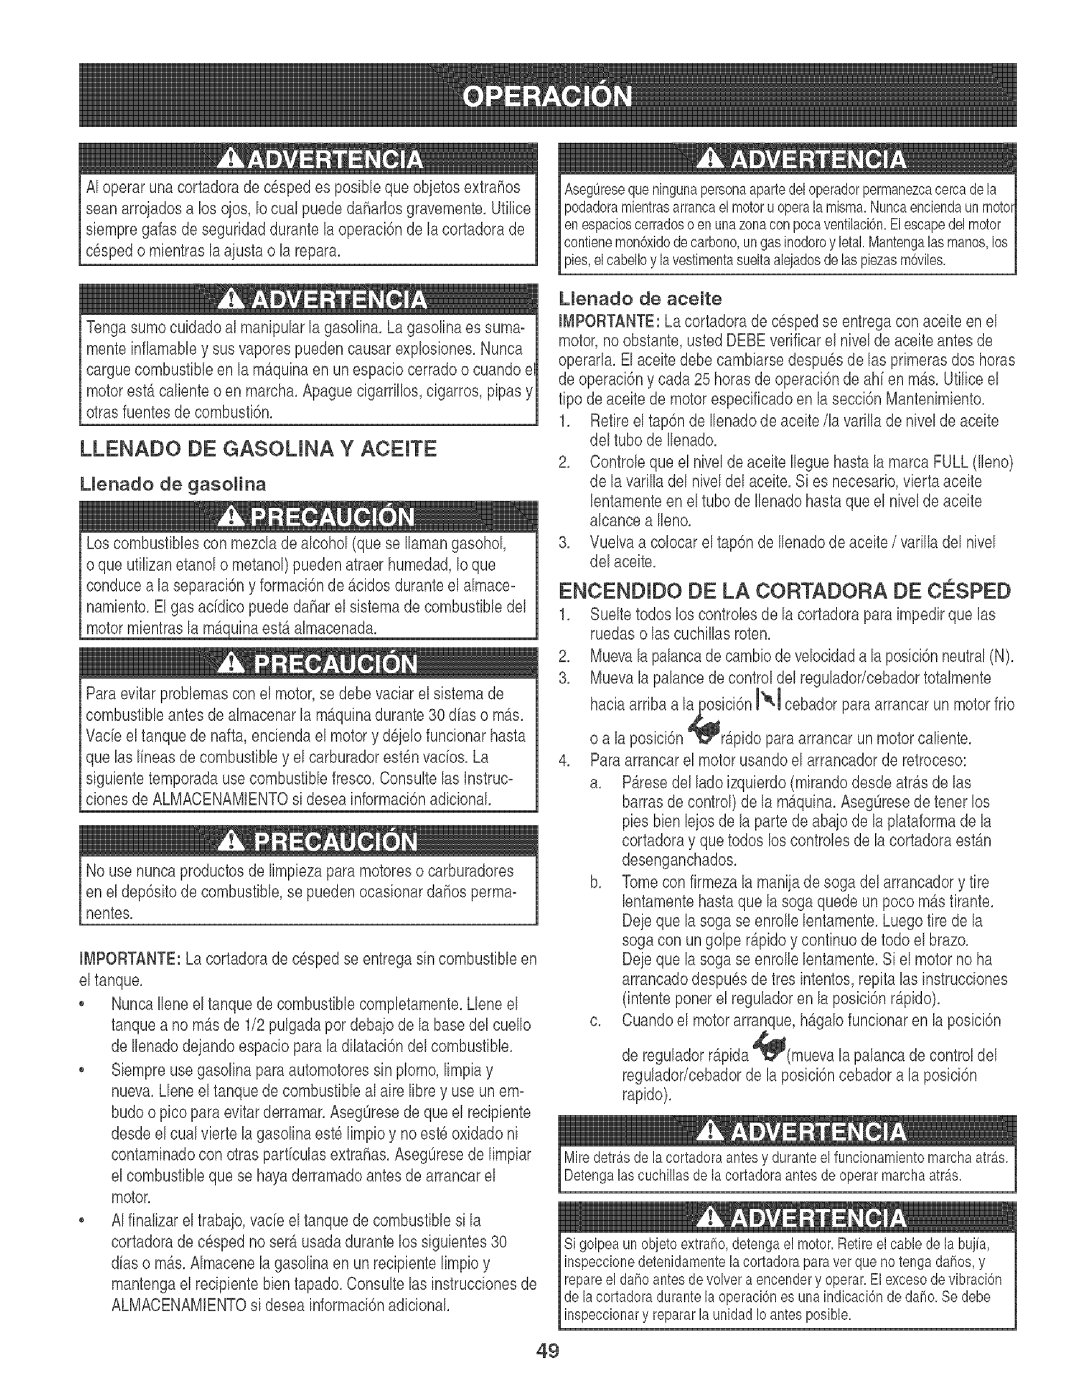 Craftsman 247.88933 manual Llenado De Gasouna Y Aceite, Encendido De La Cortadora De Co:Sped 